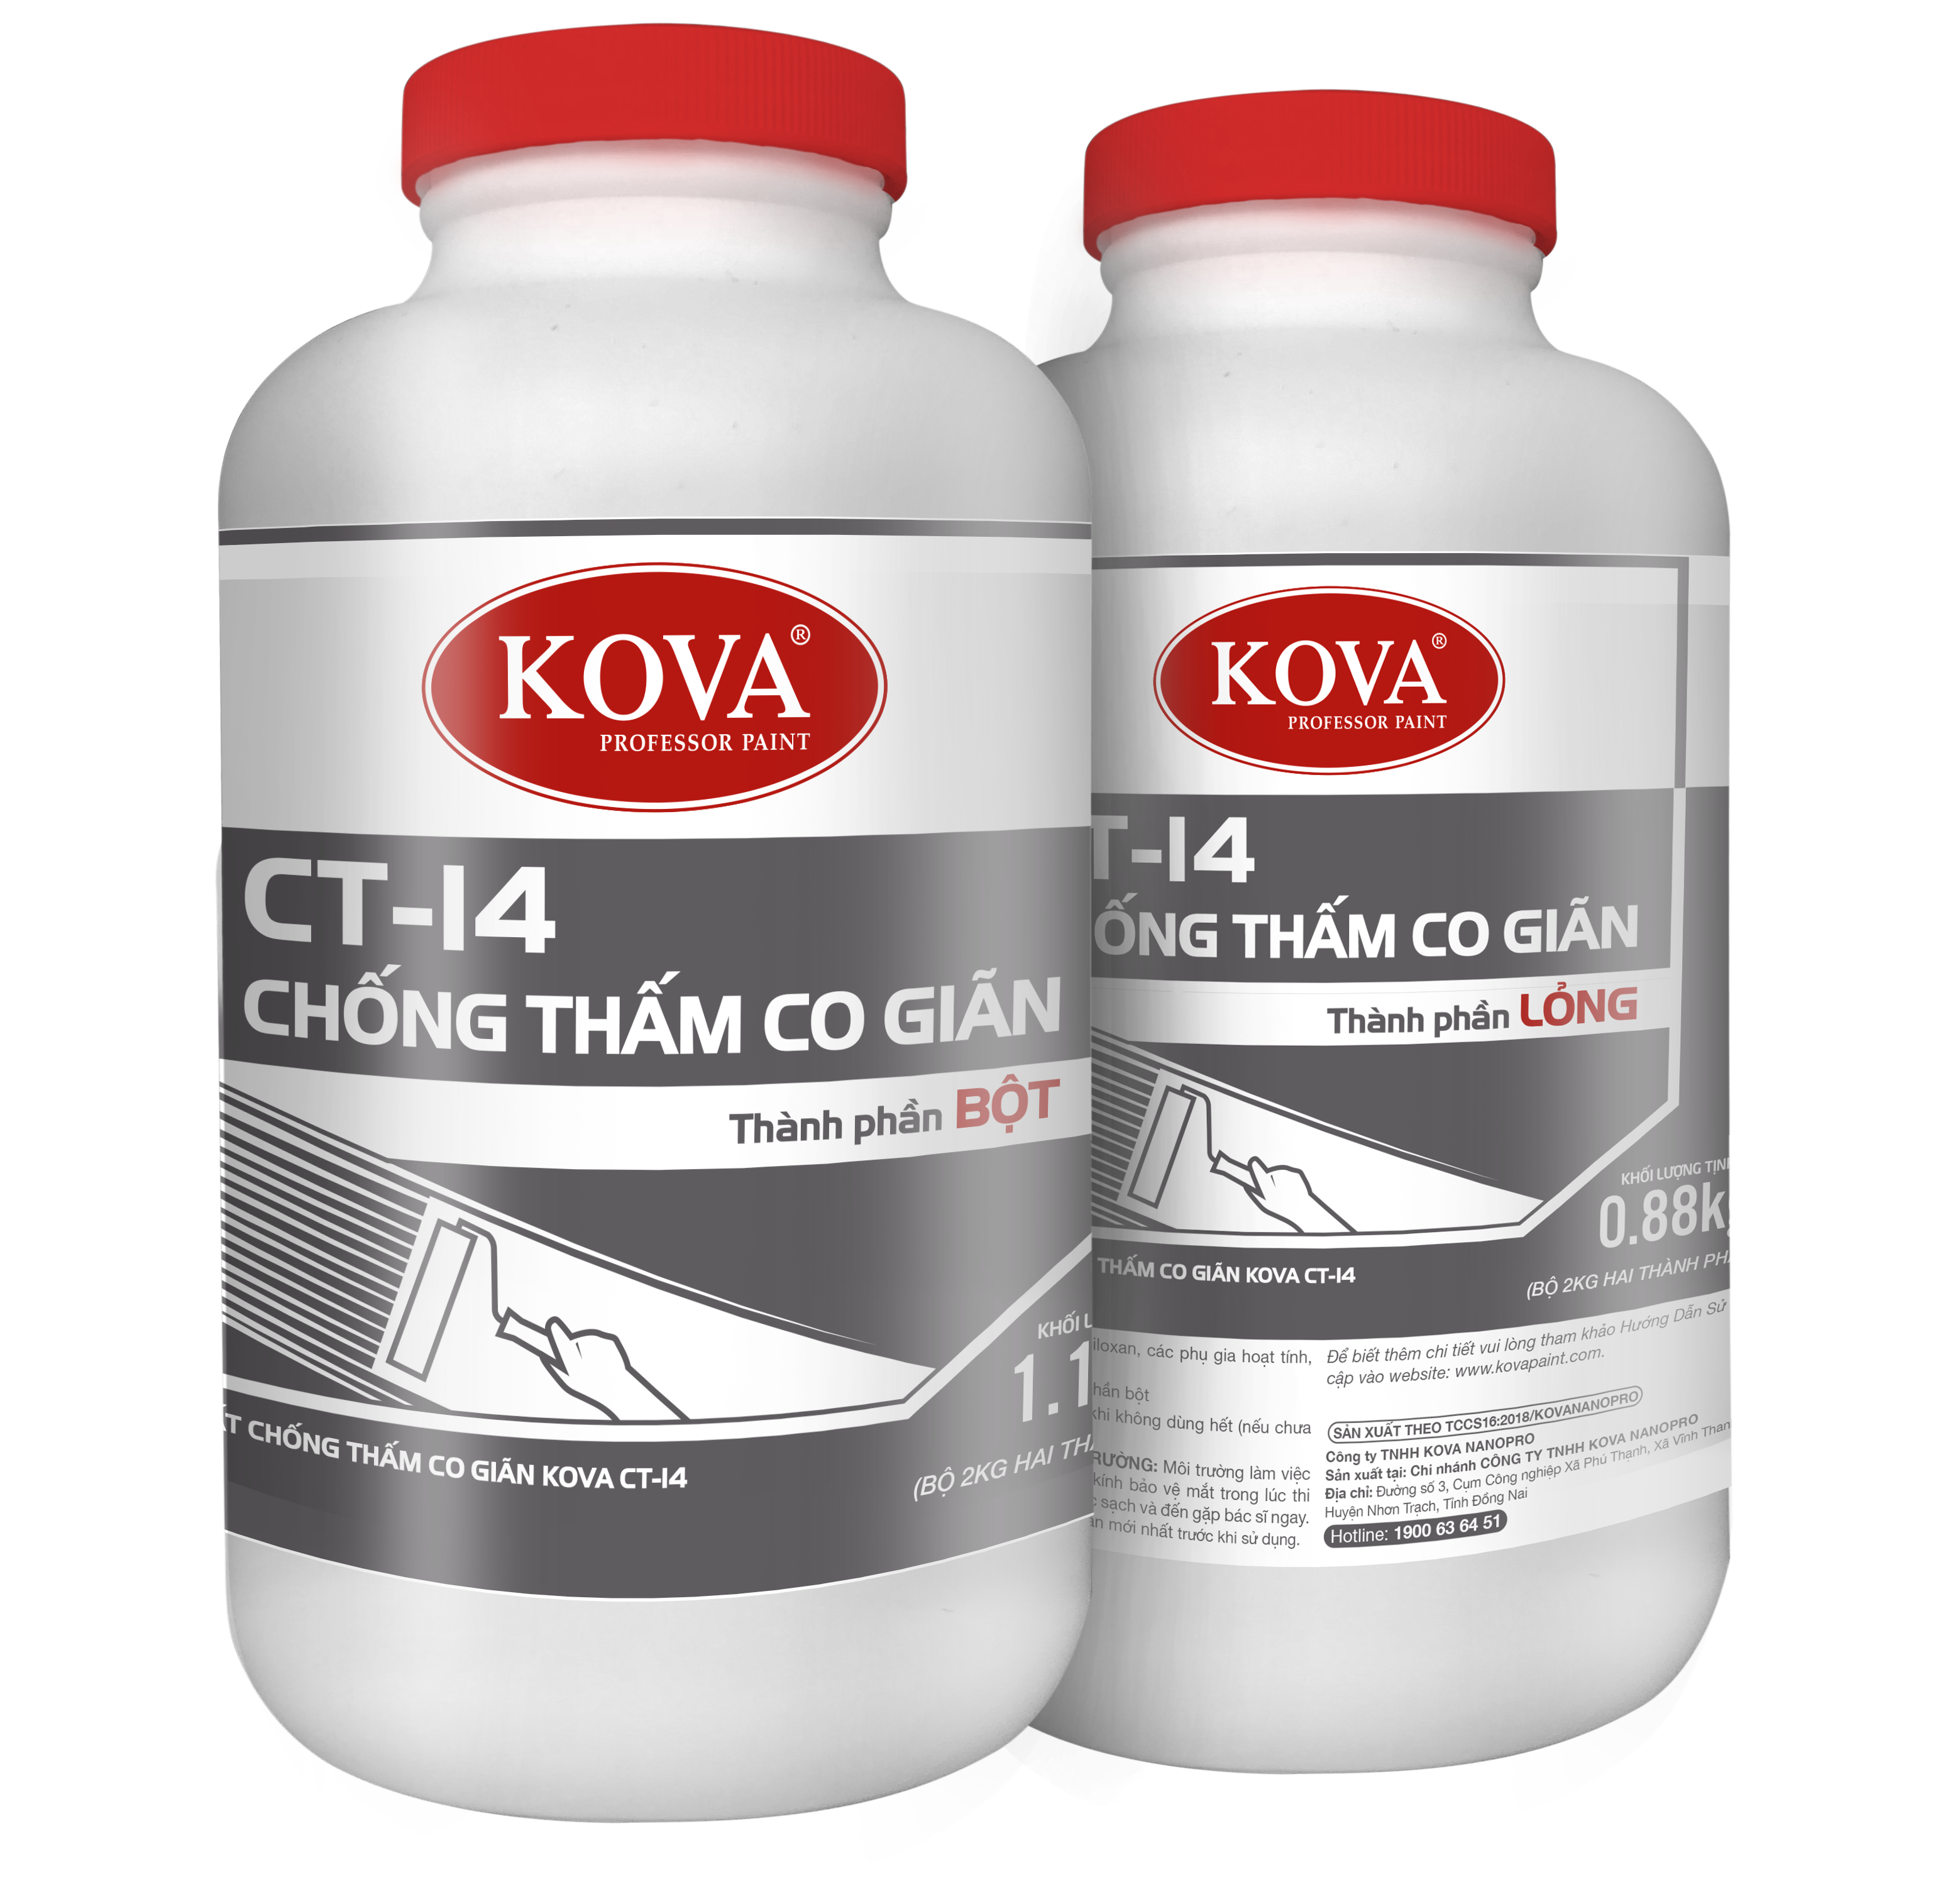 KOVA CT-14: Sơn nước Kova CT-14 được ưa chuộng bởi sự bền bỉ và độ phủ cao. Nếu bạn đang muốn tìm hiểu về những mảng sơn nước phù hợp với nhà cửa của mình, hãy xem hình ảnh liên quan tới sản phẩm KOVA CT-14.